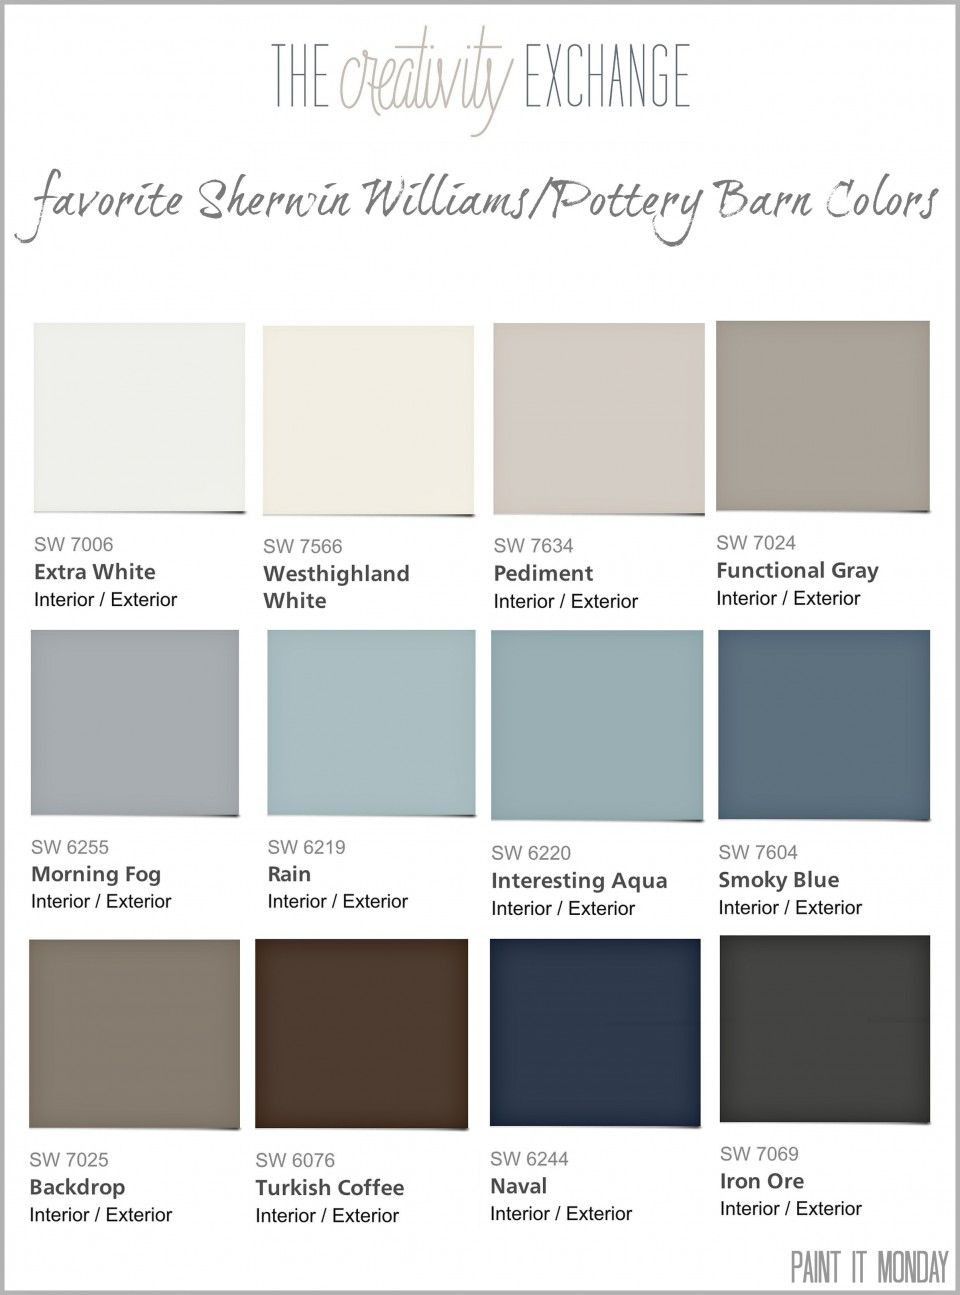 Best ideas about Paint Colors Home Depot
. Save or Pin Bathroom Paint Colors Home Depot and bathroom paint colors Now.